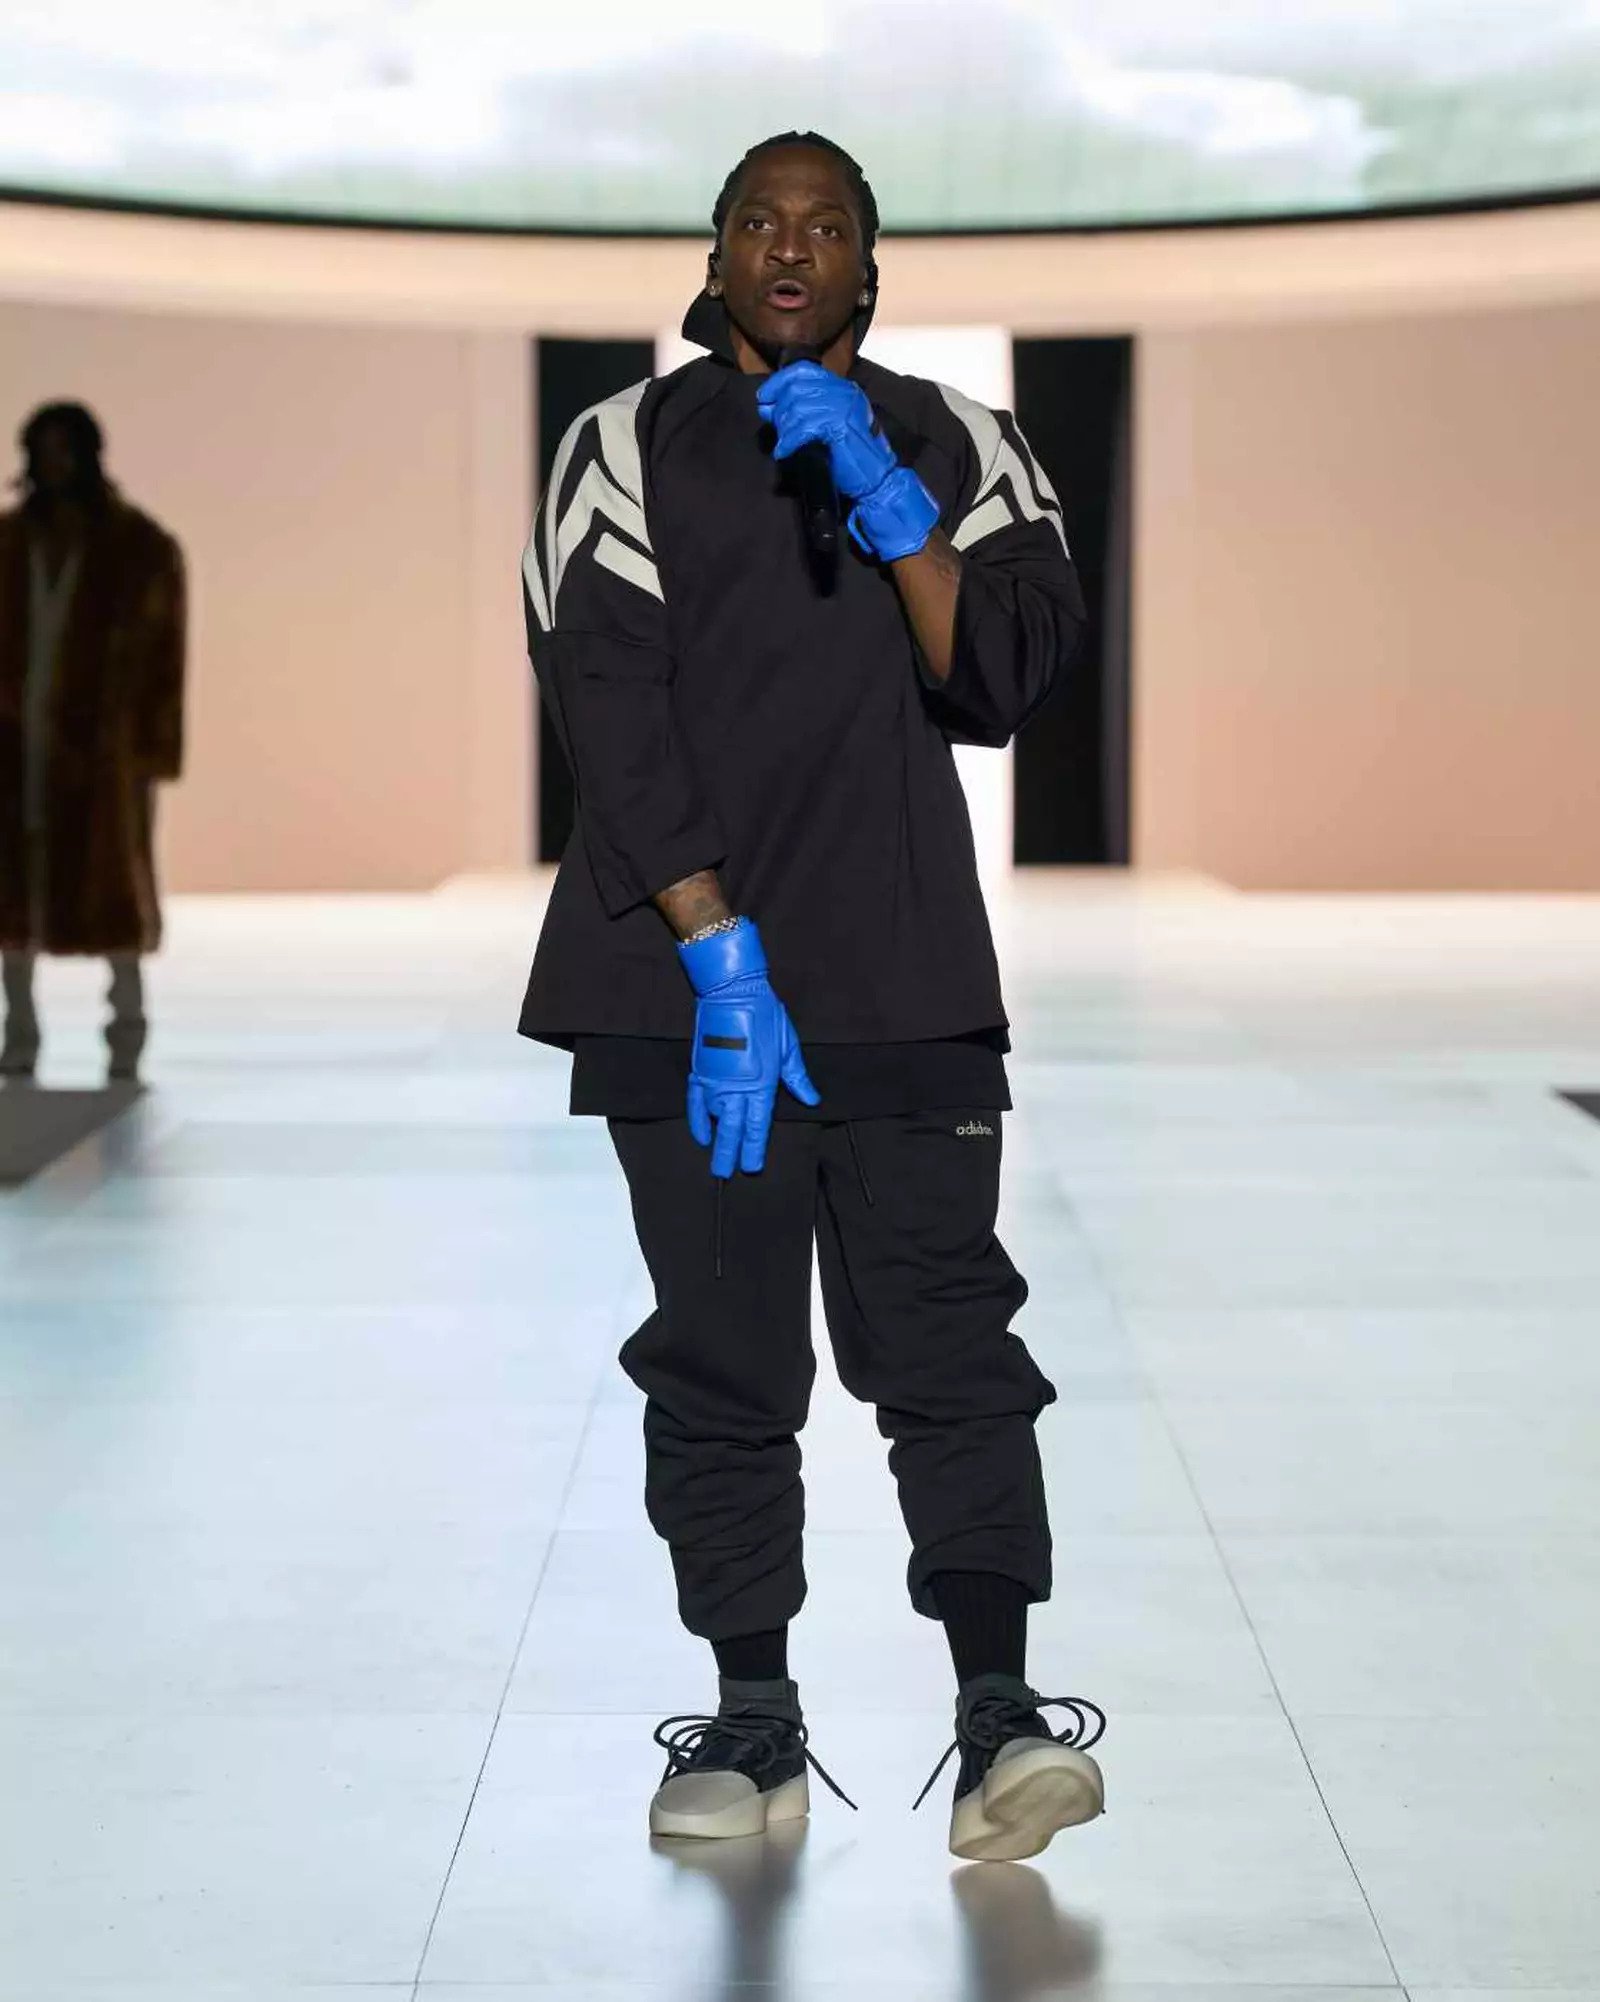 Fear of God x Adidas Collaboration Debuts At Hollywood Bowl | SoleSavy News